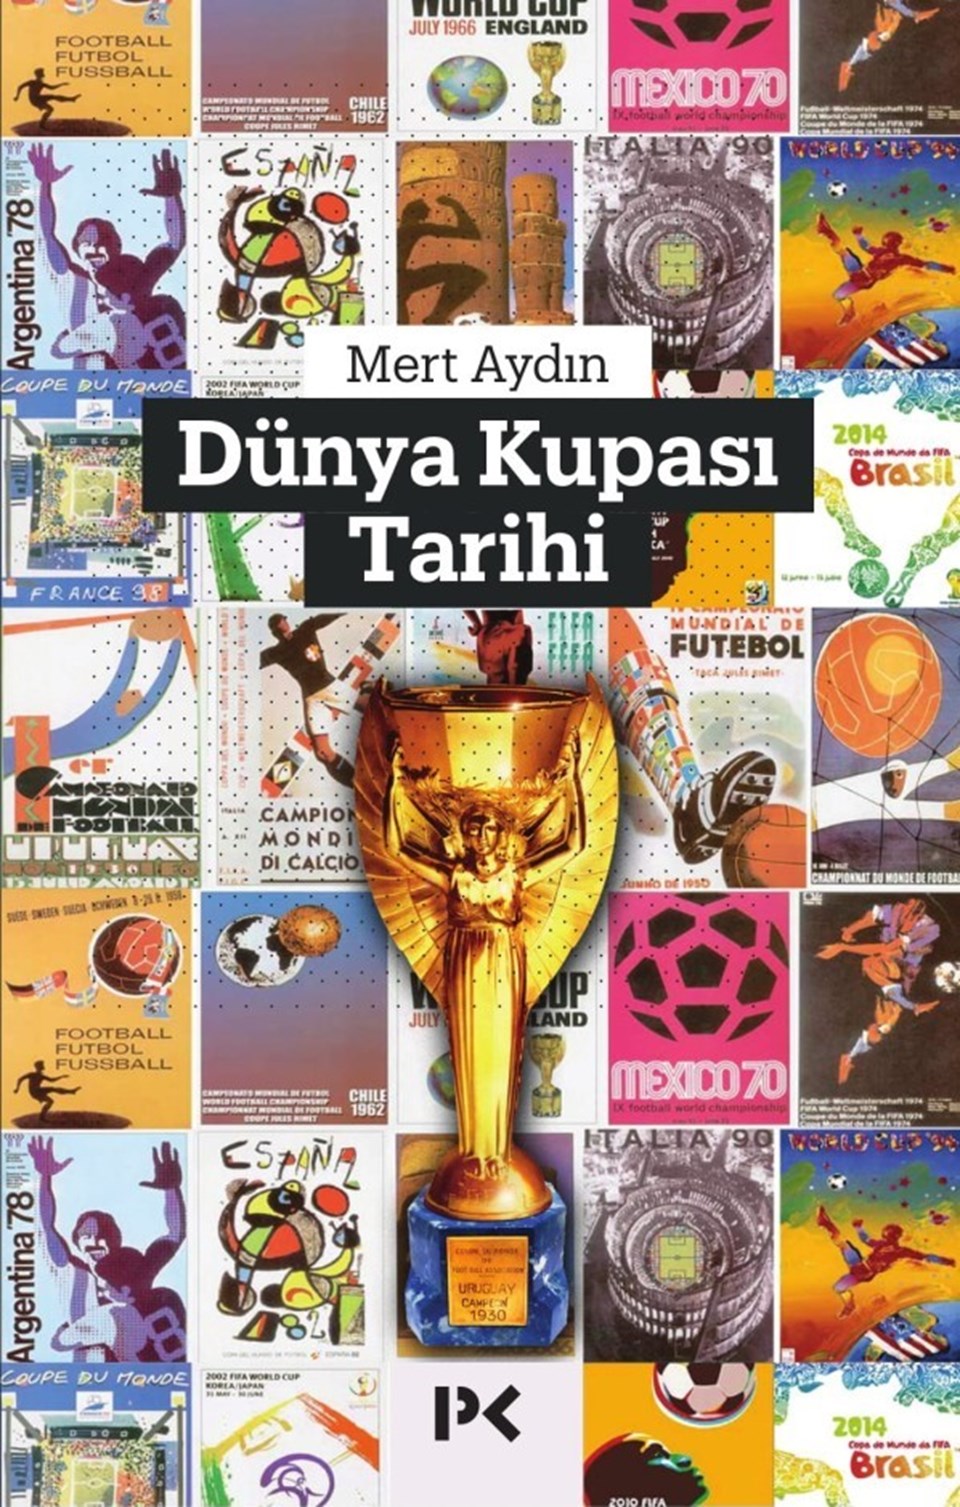 Mert Aydın, Profil Kitap (Mayıs 2018)

